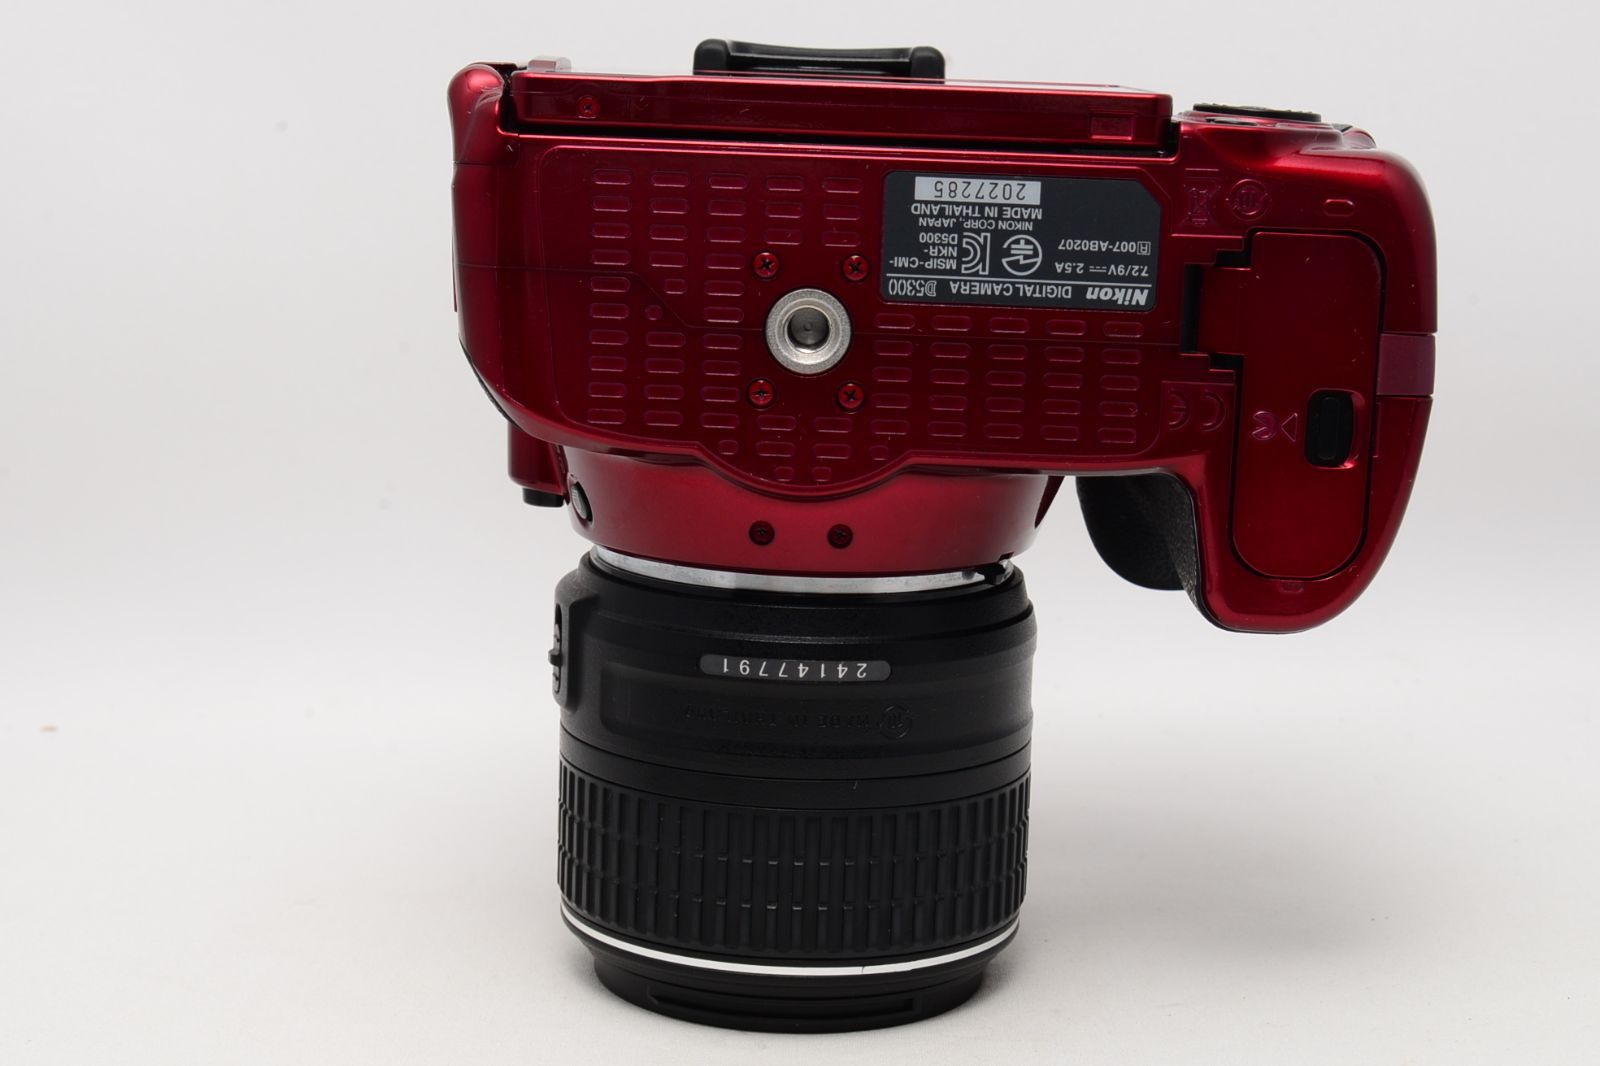 シャッター回数8066☆ ニコン Nikon デジタル一眼レフカメラ D5300 18-55mm VR II レンズキット レッド - カメラ、光学機器